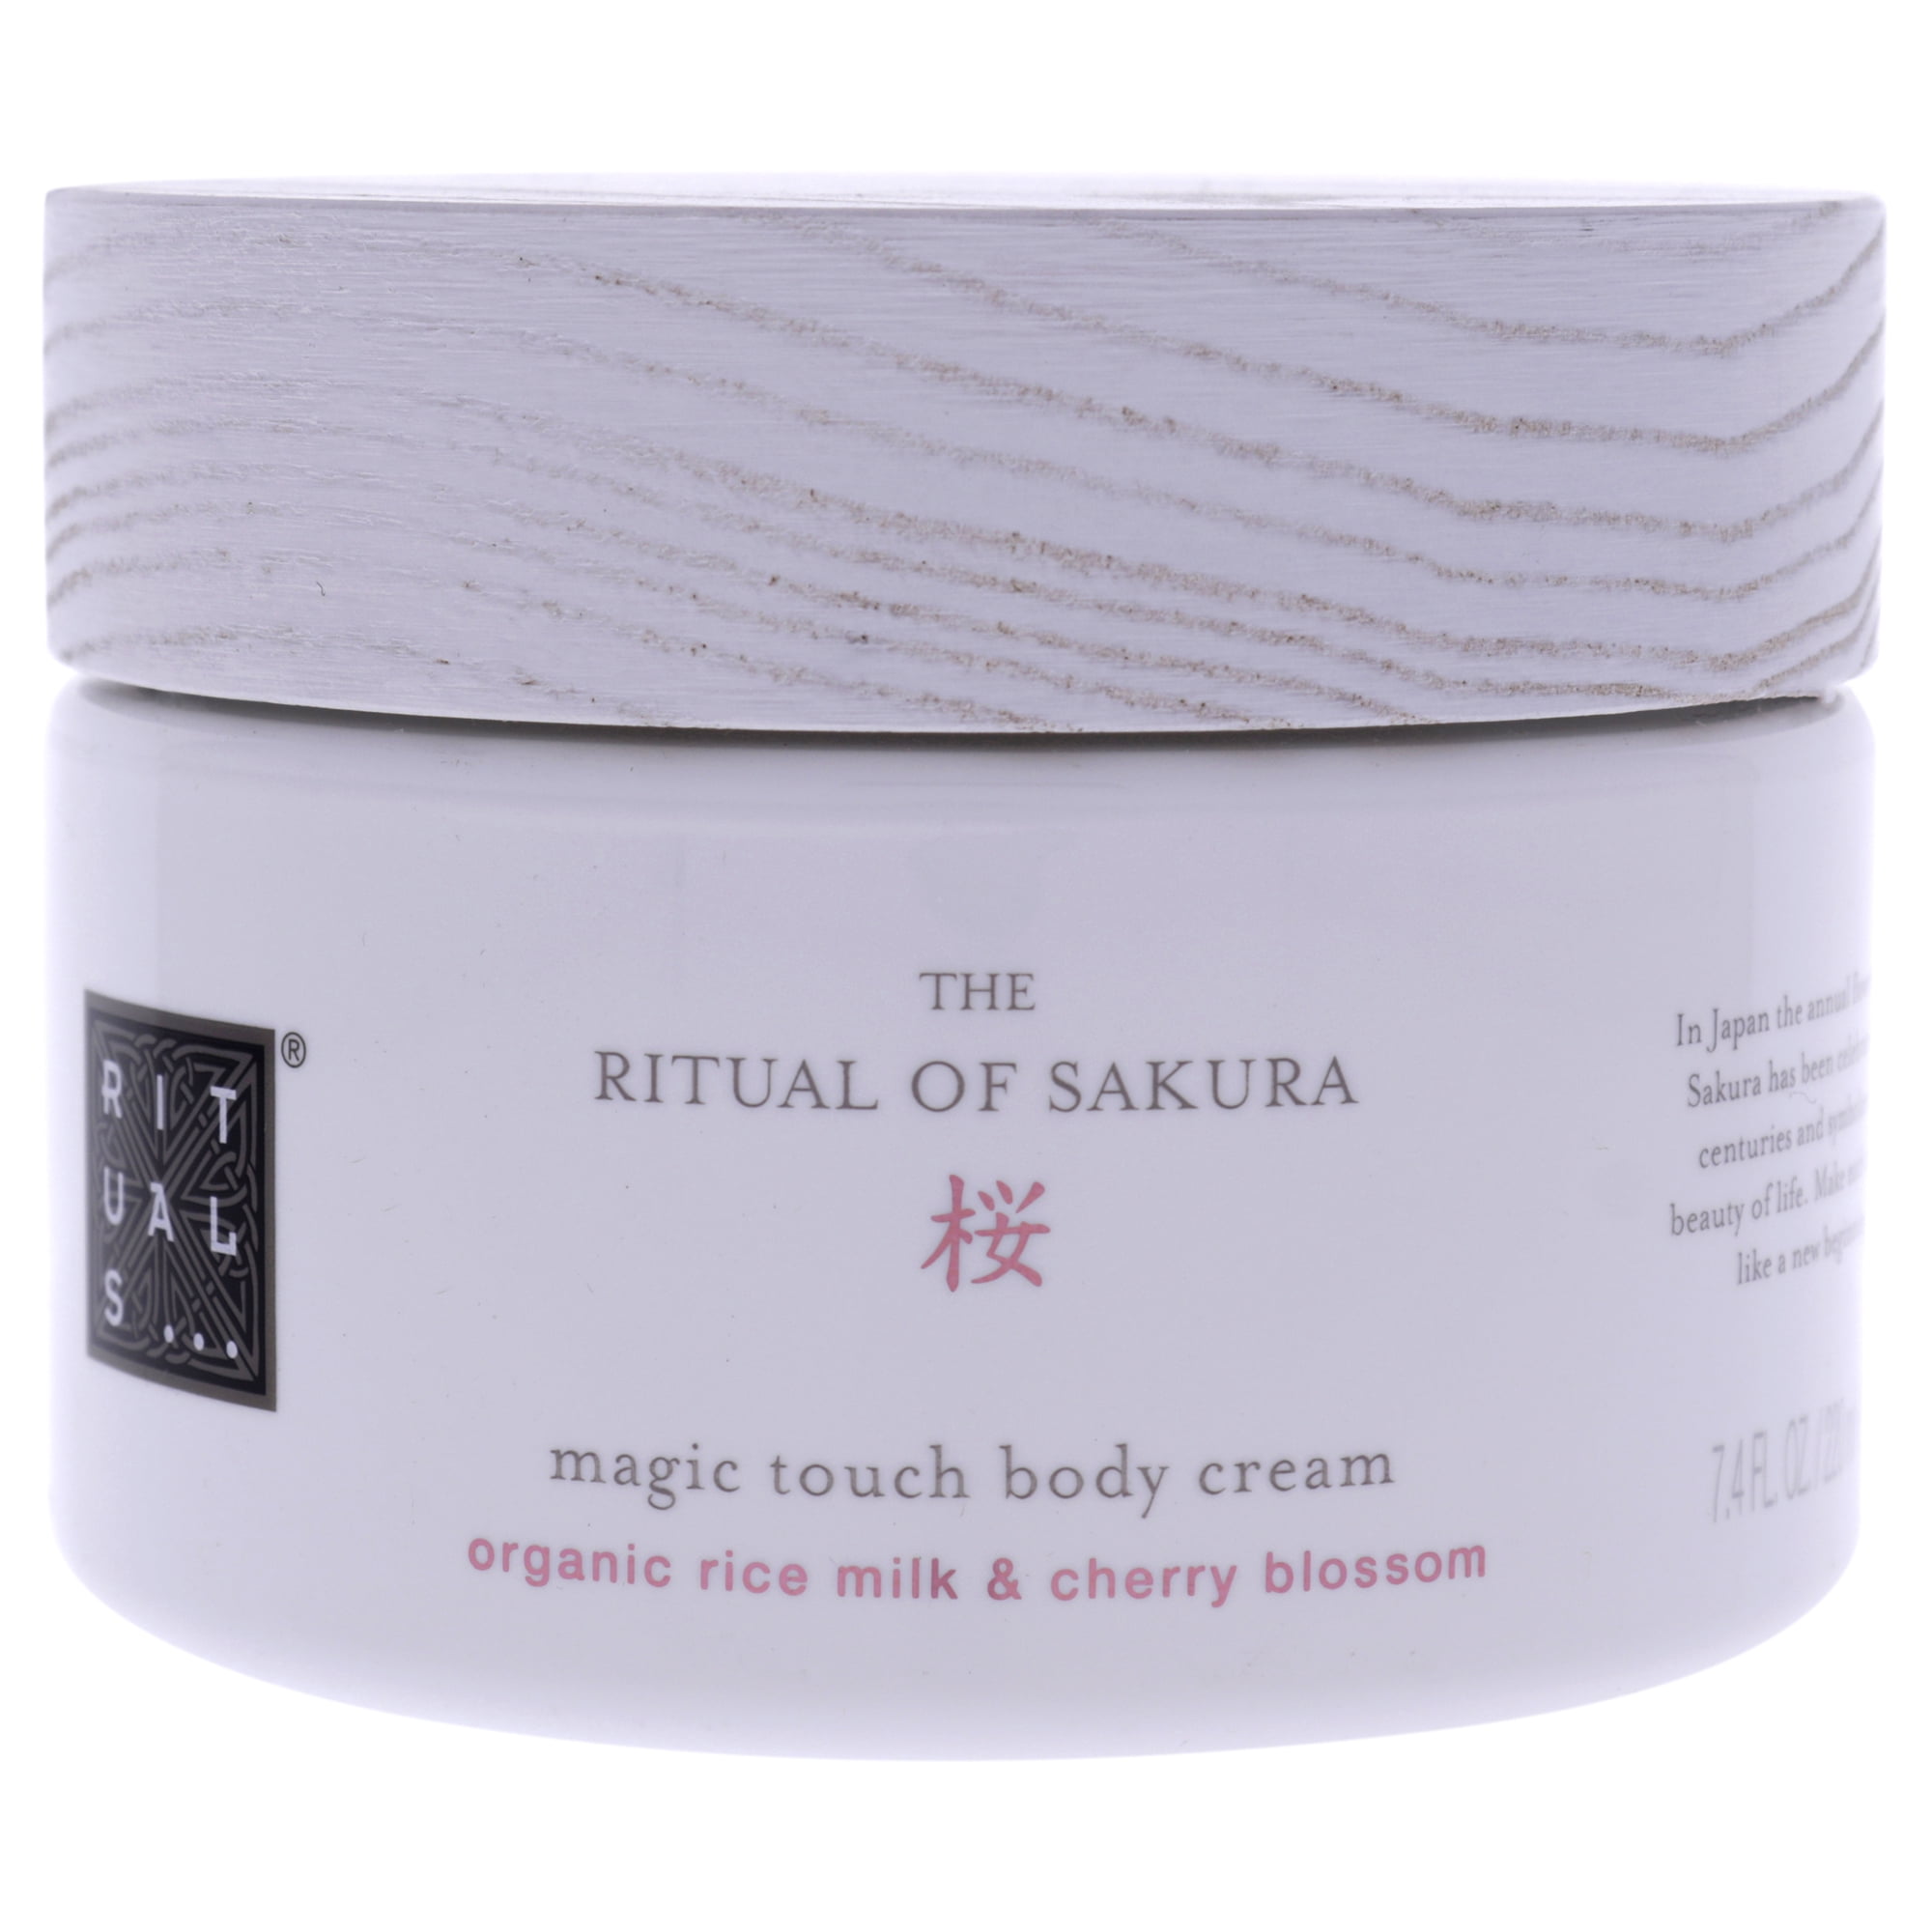 Rituals of Sakura Body Cream for Unisex, 7.4 oz